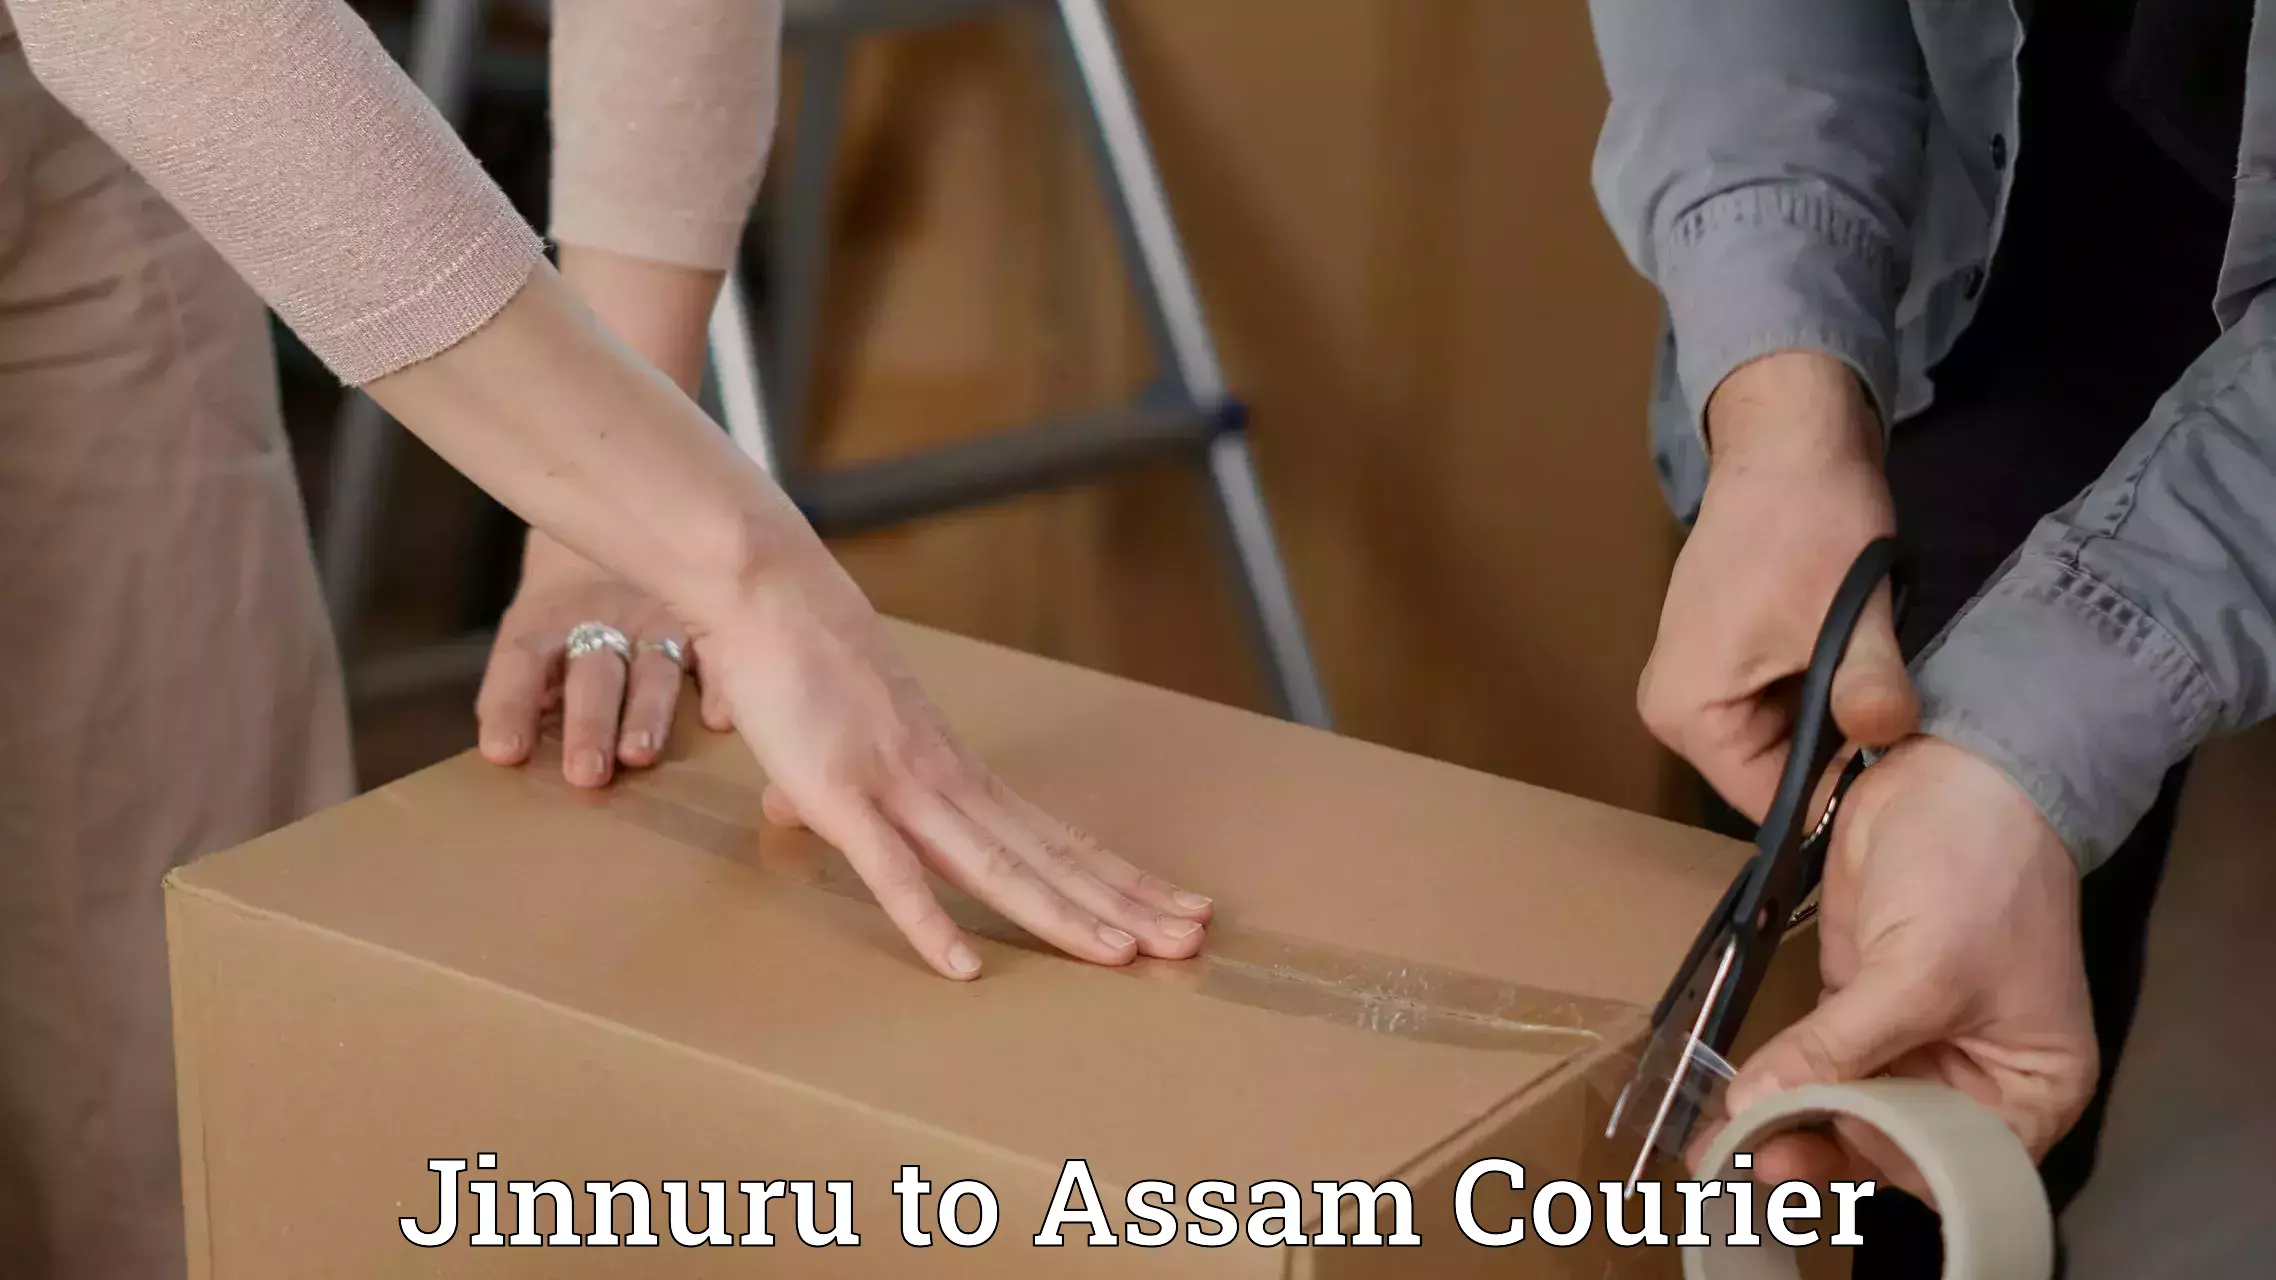 Cost-effective courier options Jinnuru to Assam